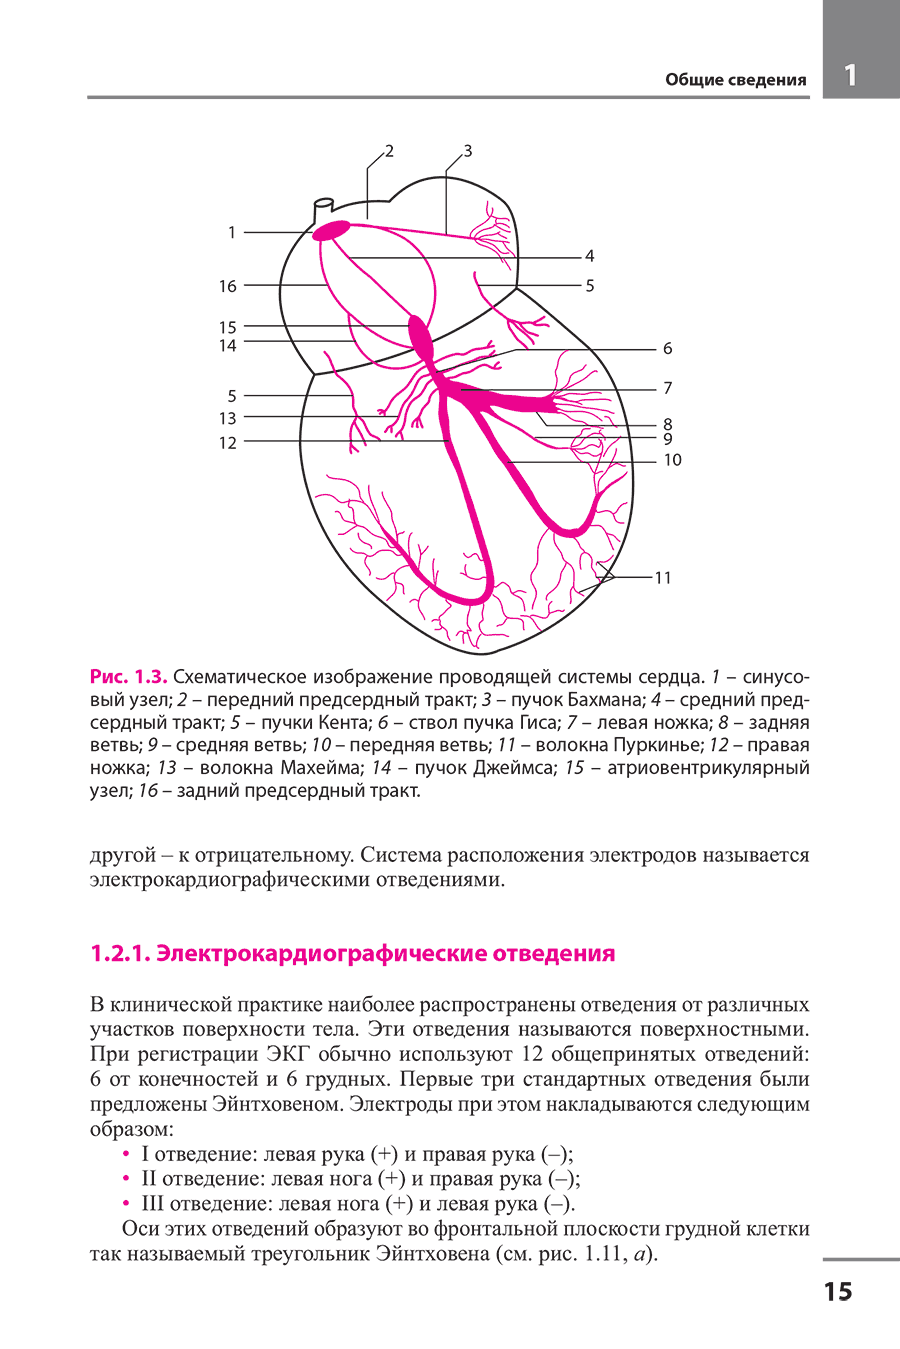 Рис. 1.3. Схематическое изображение проводящей системы сердца.